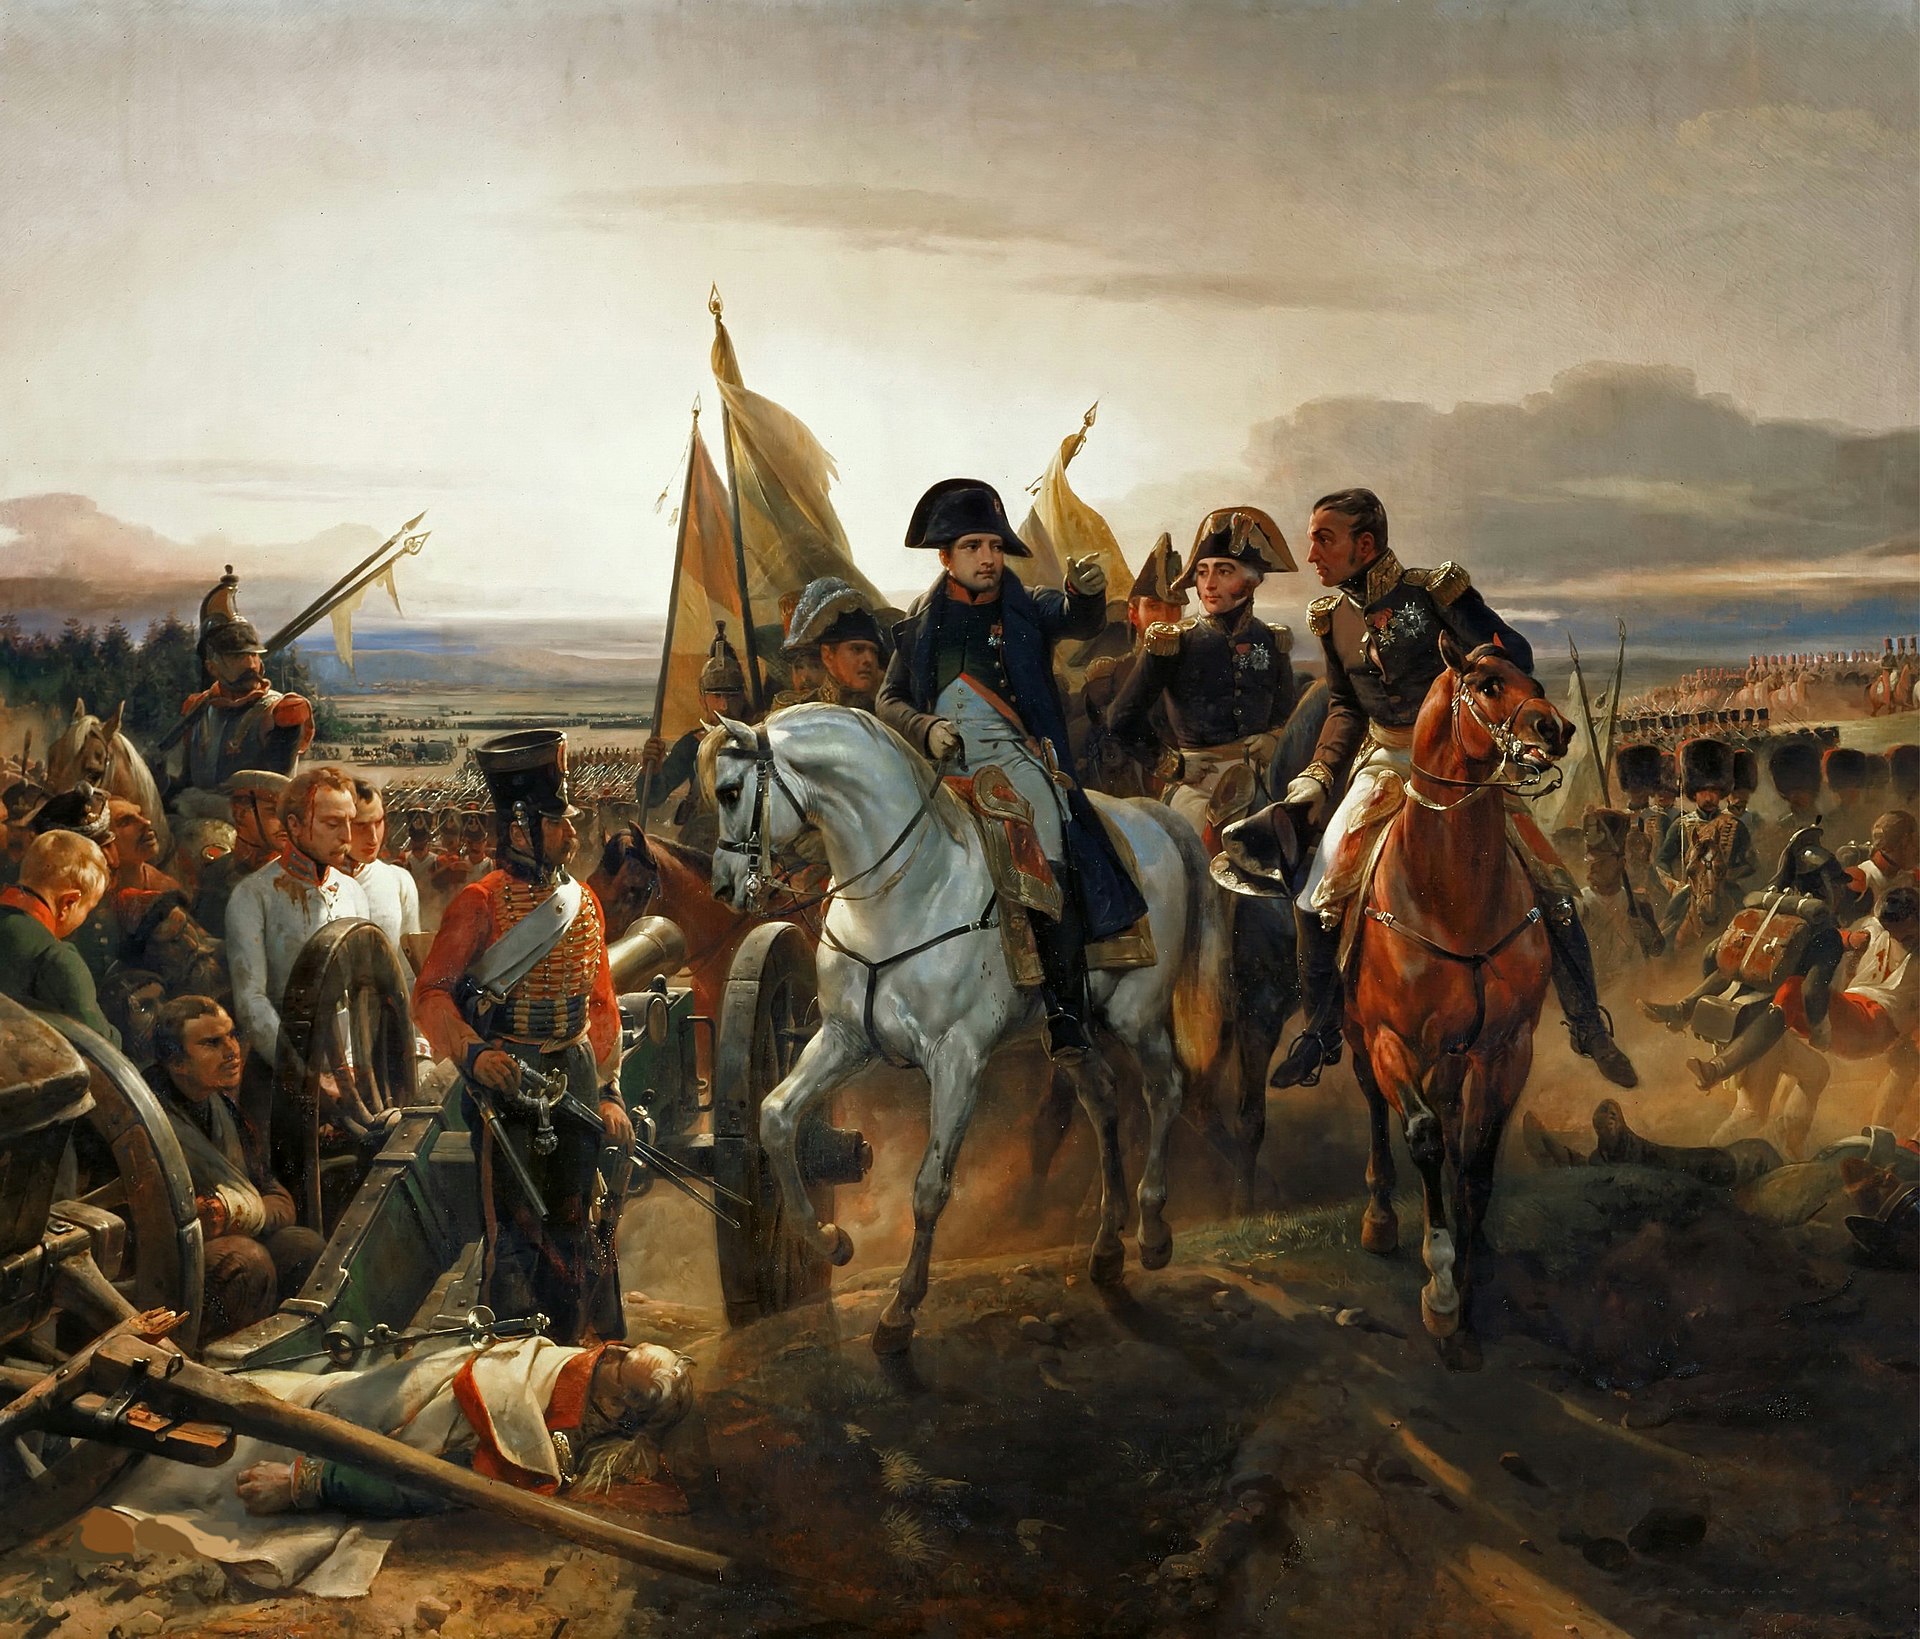 Napoléon en la batalla de Friedland, pintura realizada en 1835 por el artista francés Horace Vernet.